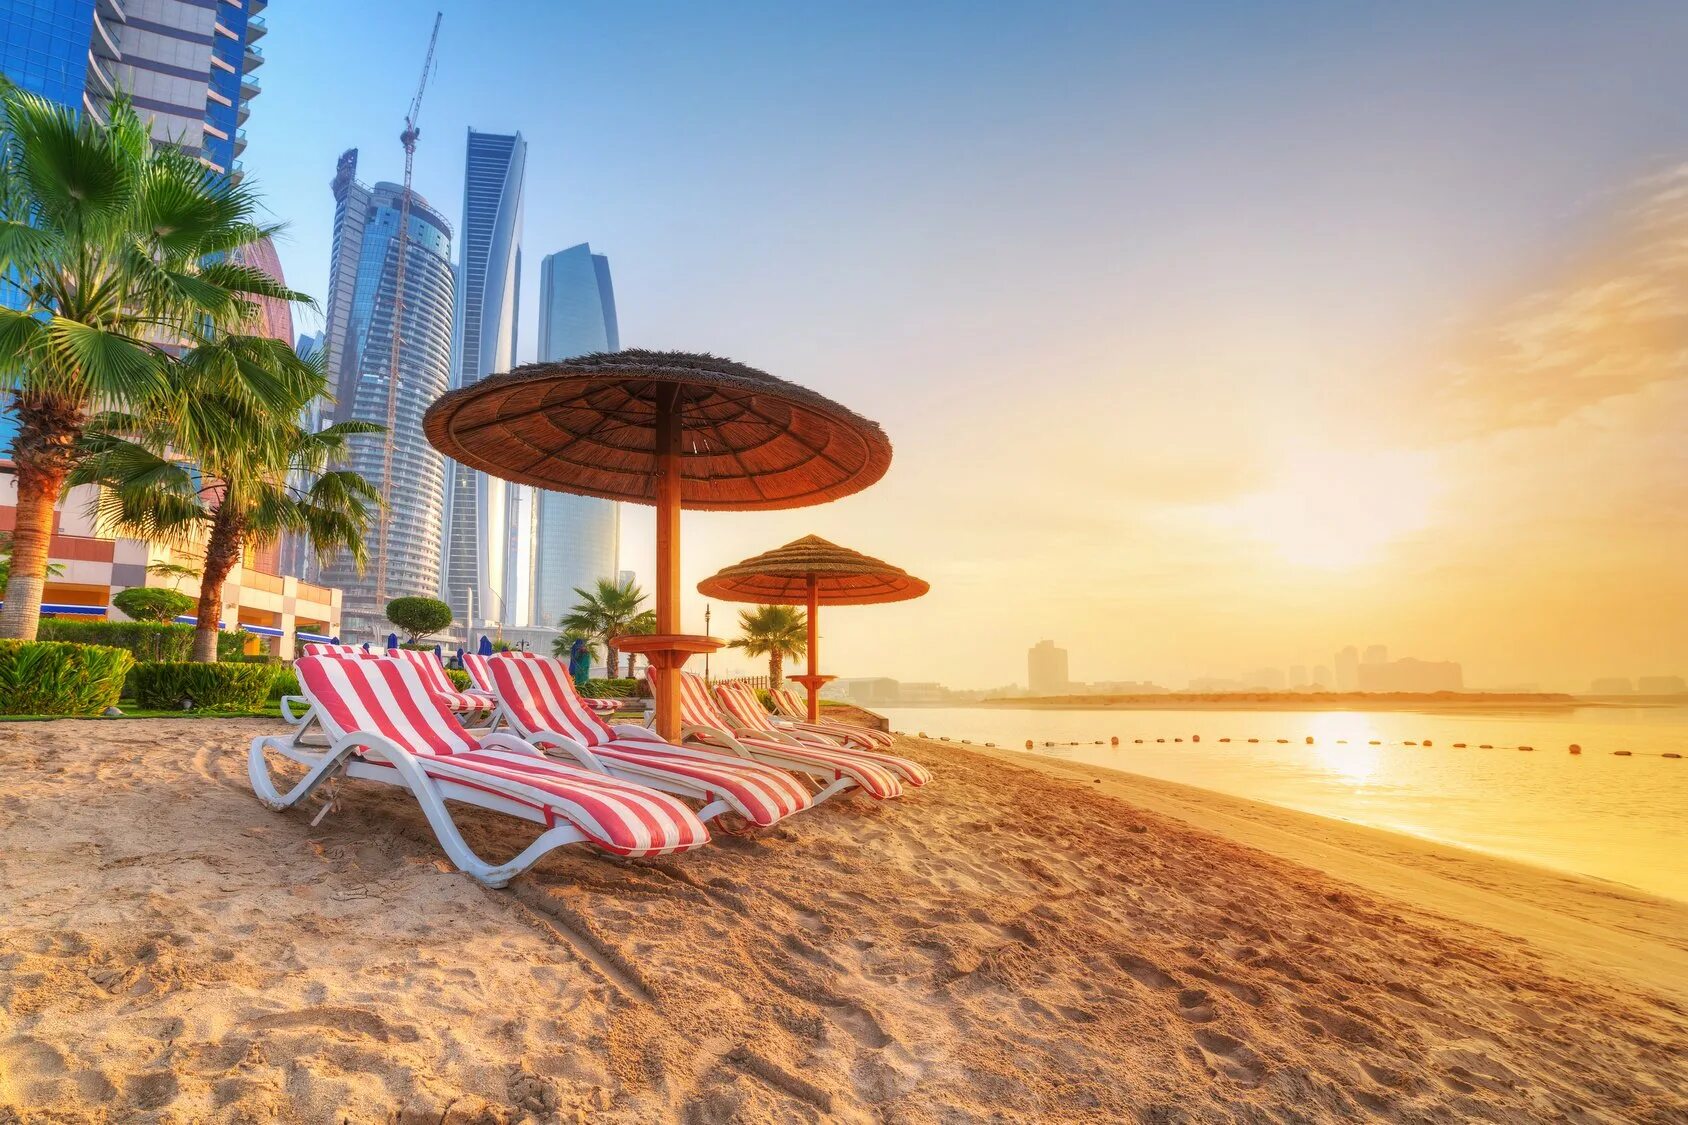 Пляж араб. Пляж Сансет Дубай. Абу Даби пляжи. ОАЭ Абу Даби пляжи. Арабские эмираты Шарджа пляжи.